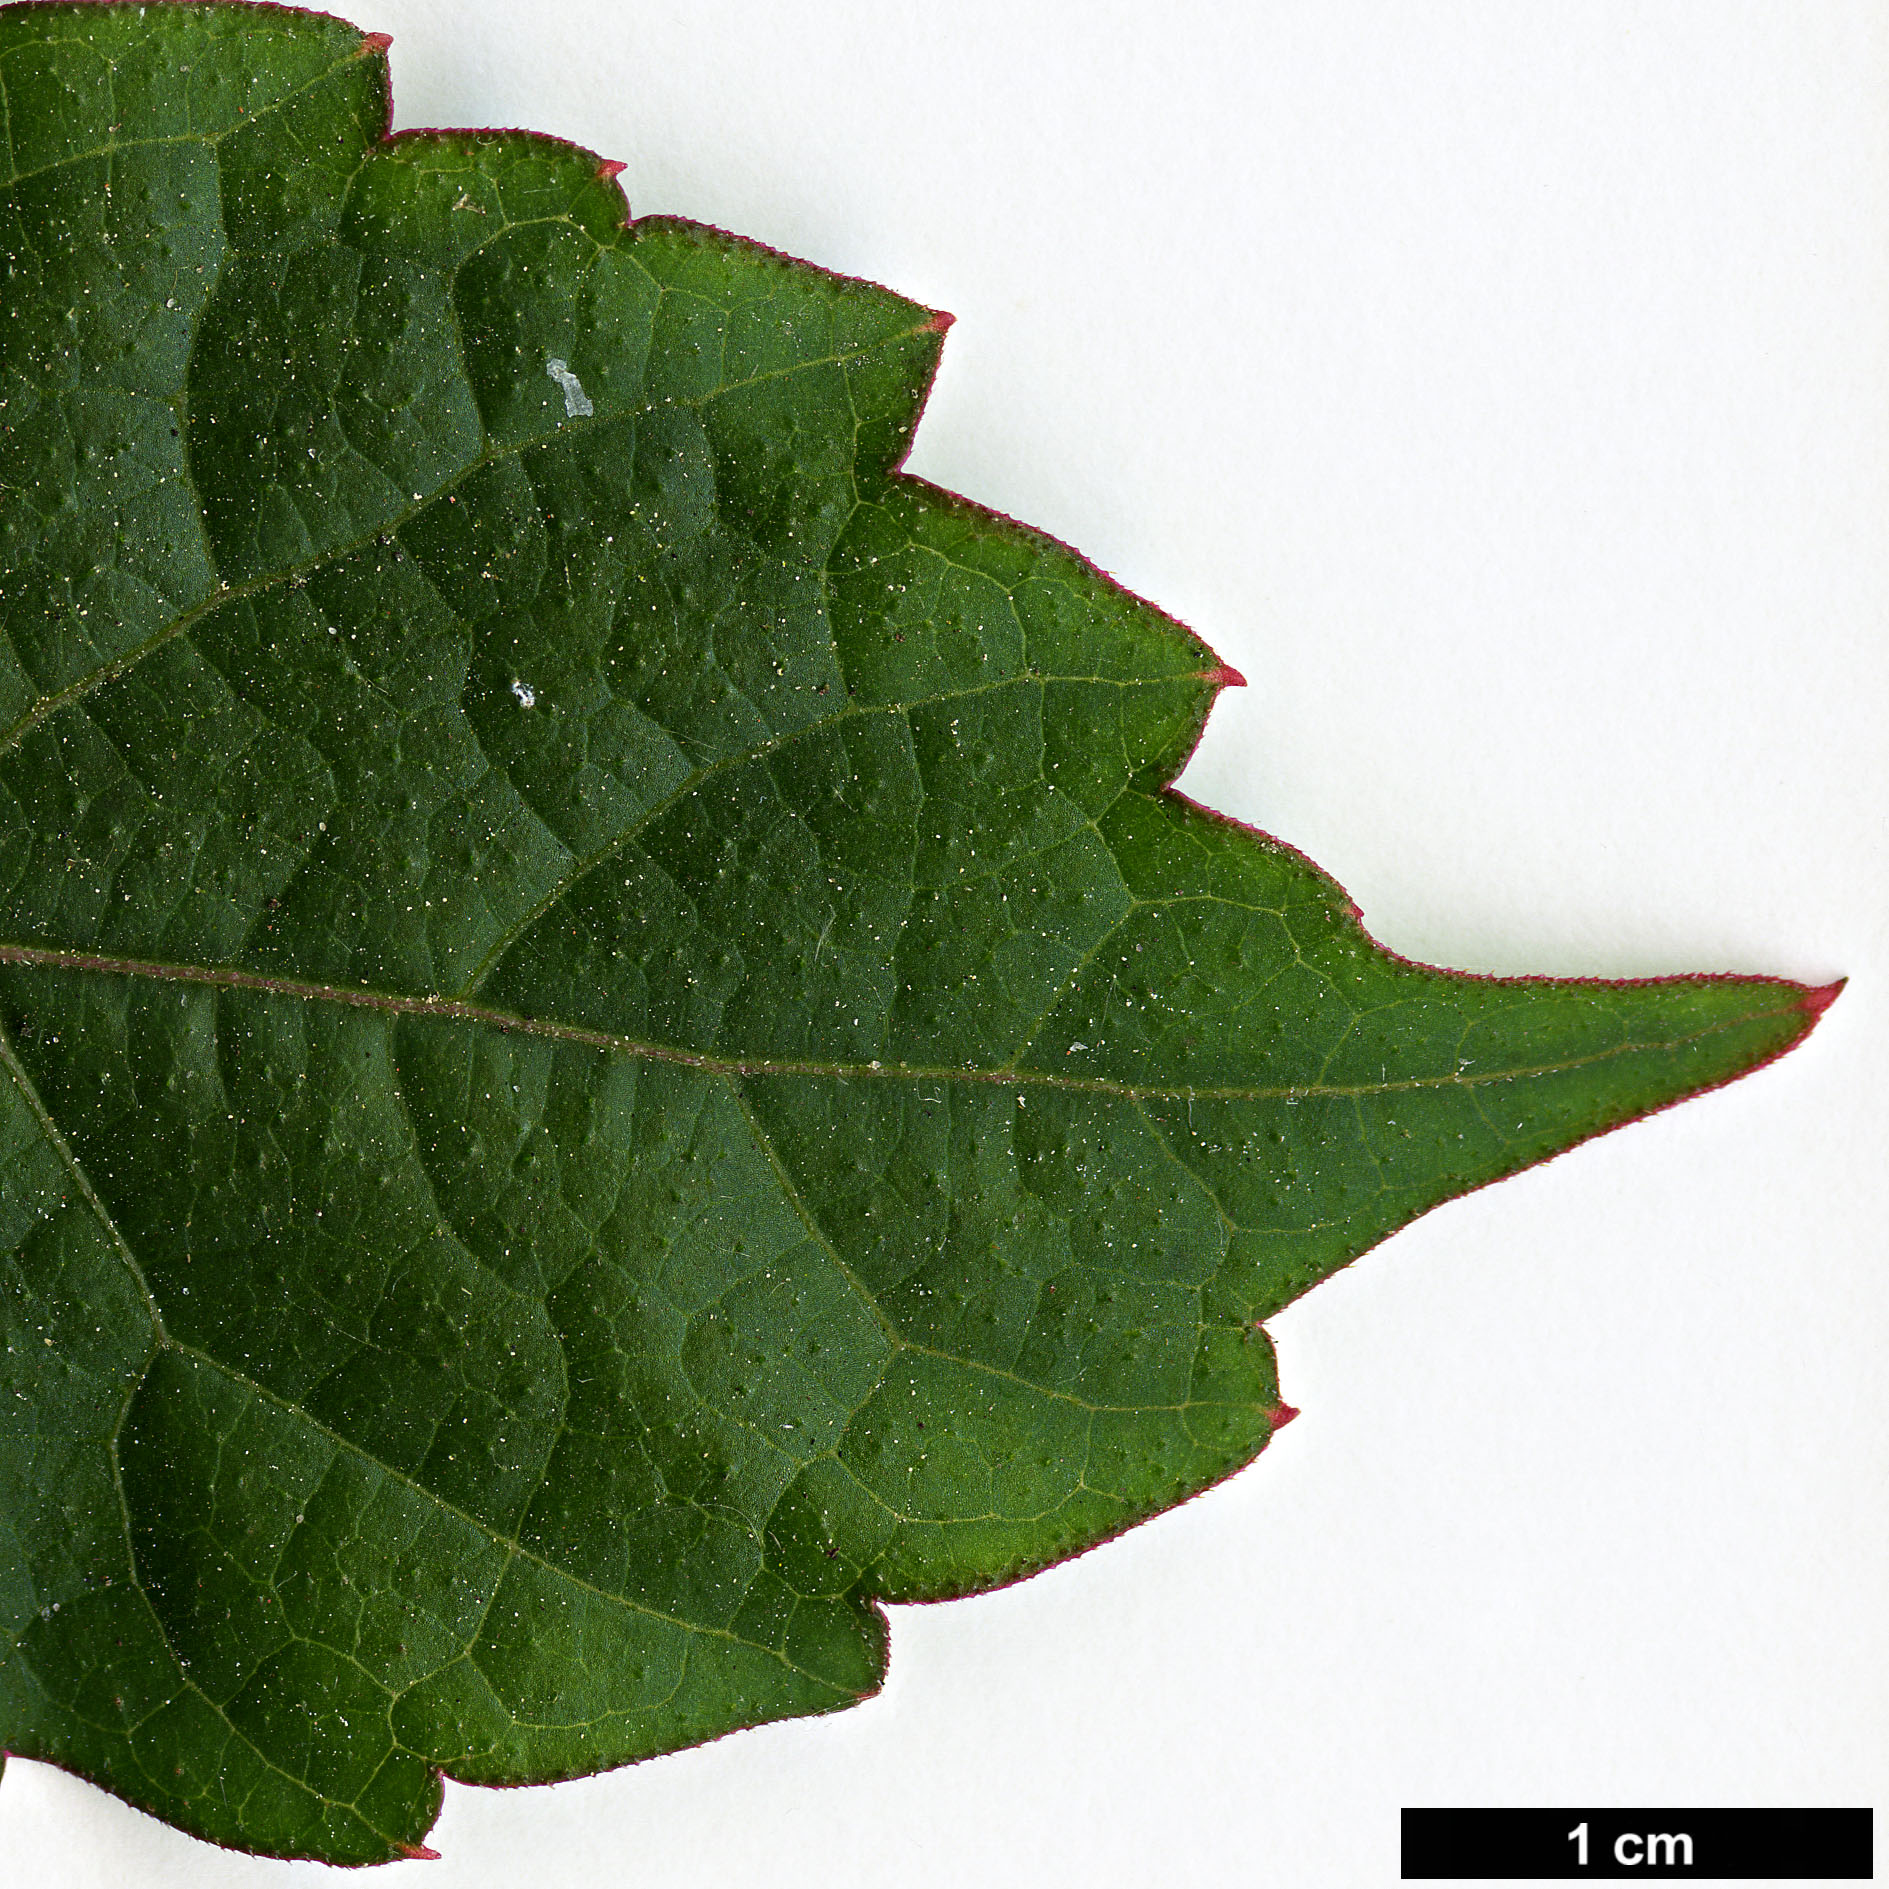 High resolution image: Family: Vitaceae - Genus: Parthenocissus - Taxon: tricuspidata